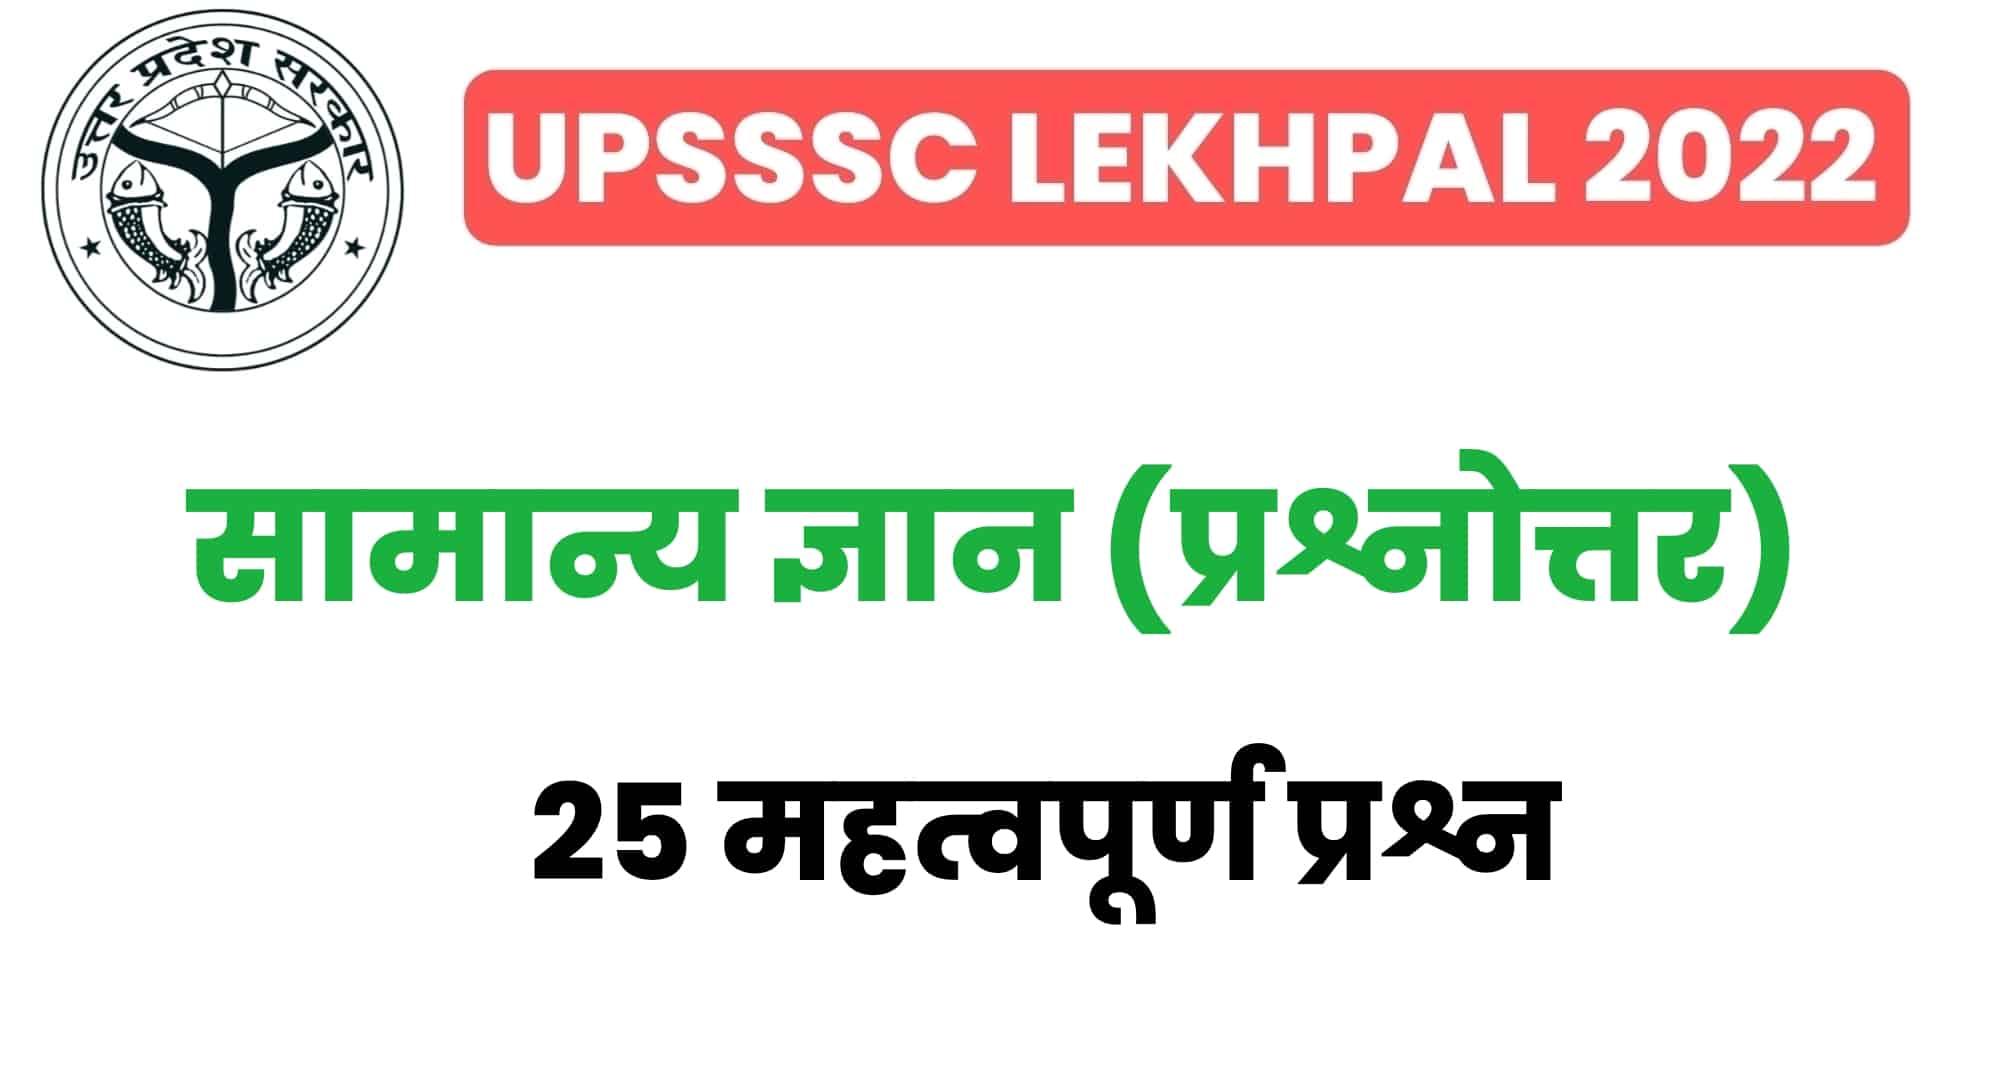 UP Lekhpal सामान्य ज्ञान प्रैक्टिस सेट : परीक्षा से पहले GK के इन 25 महत्वपूर्ण प्रश्नों का कर लें अध्ययन